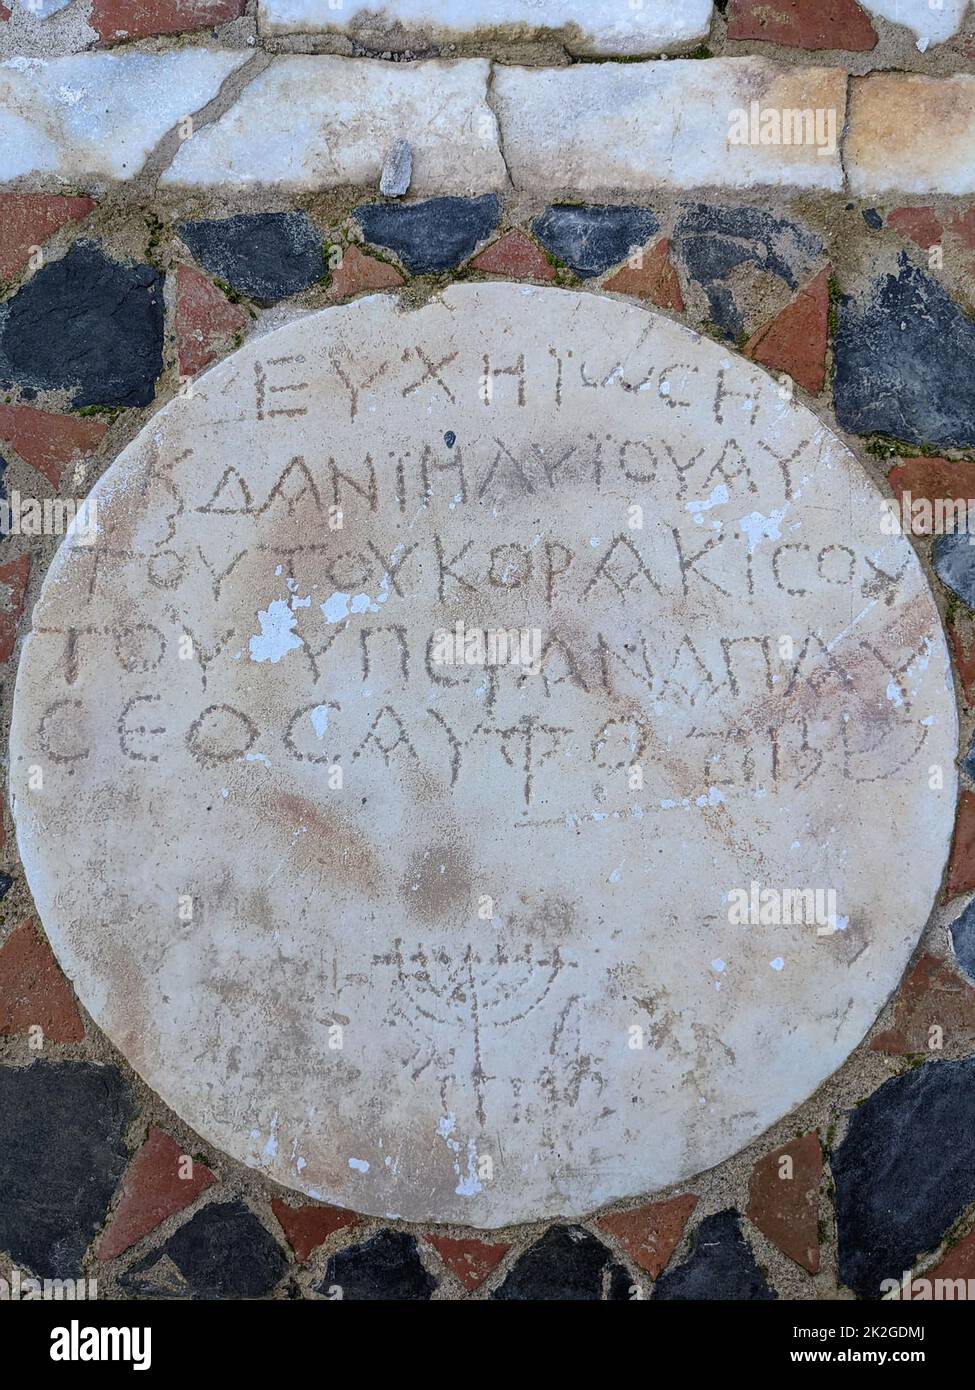 6971. Synagogue datant c. 6th. C. de Side, dans le sud de la Turquie. Inscription de Greekand hébreu (Shalom) avec Menorah (candelabra) Banque D'Images